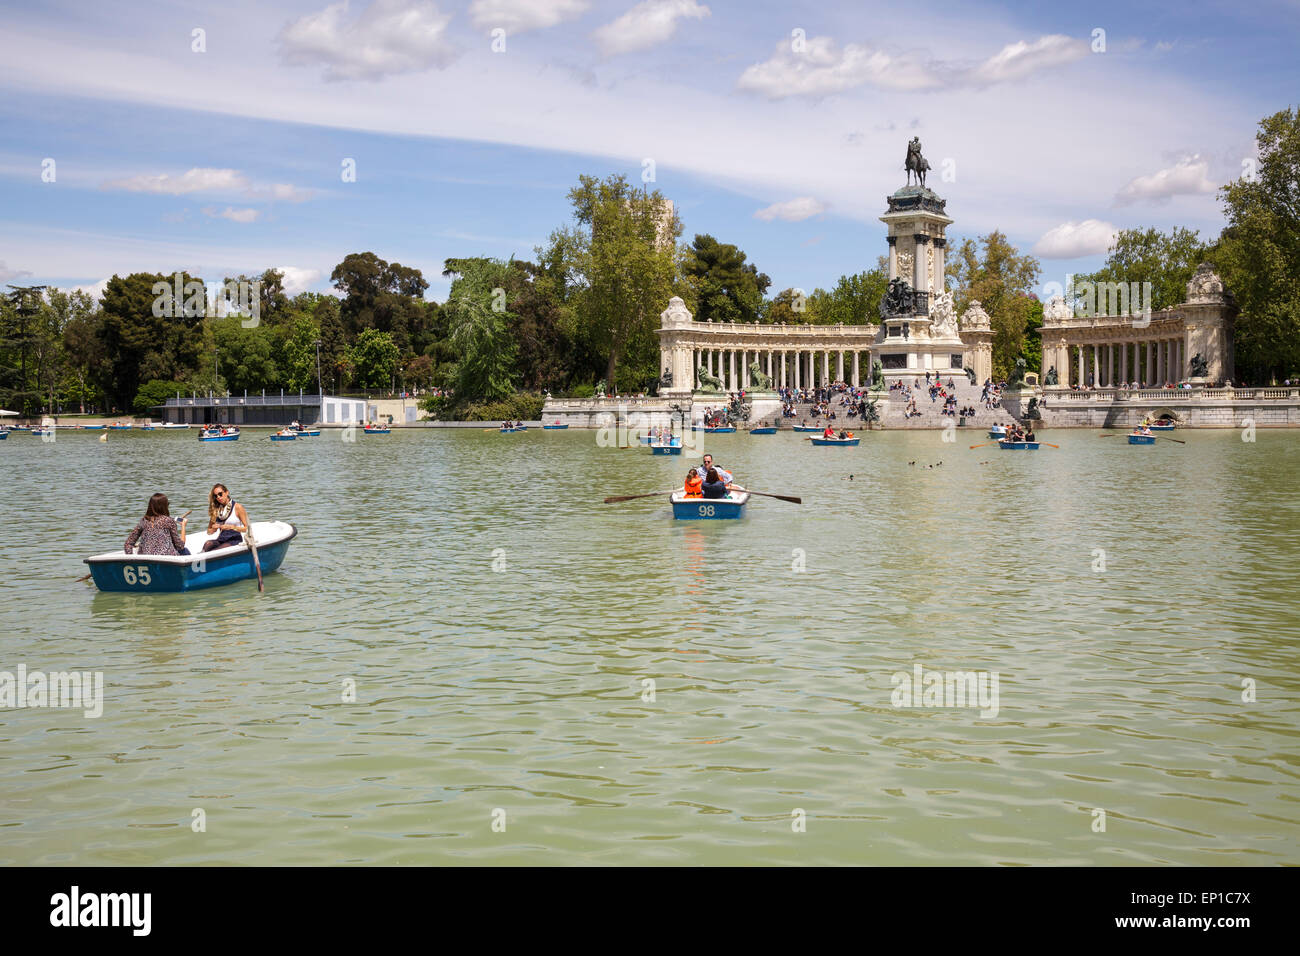 Buen Retiro Park con il lago in barca e il monumento a Alfonso XII, Madrid, Spagna Foto Stock